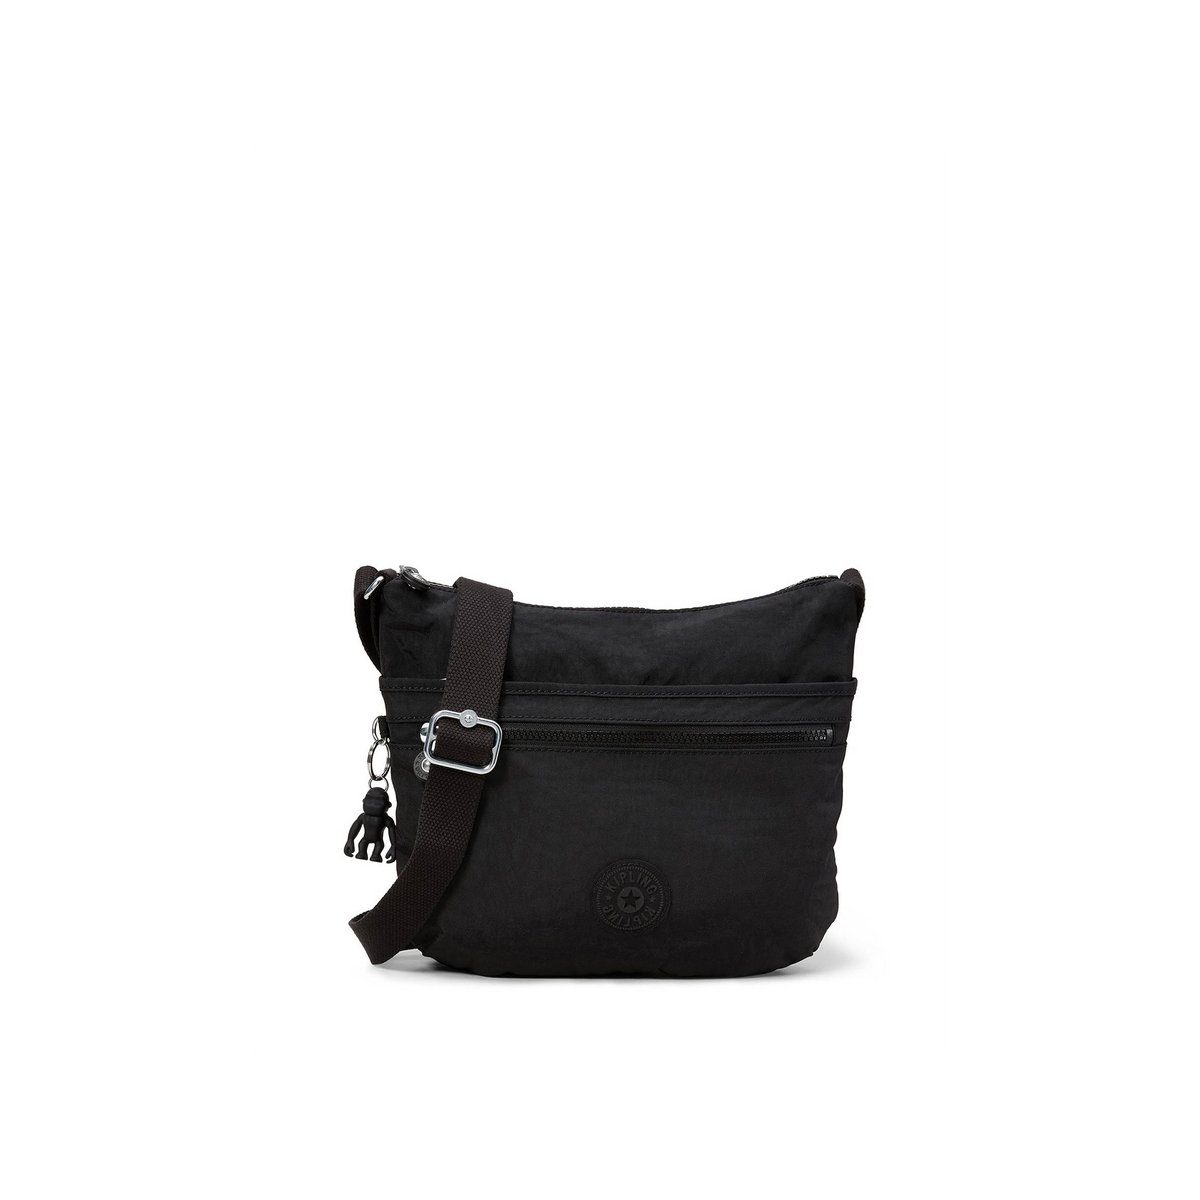 Kipling Damen Handtaschen online kaufen | OTTO